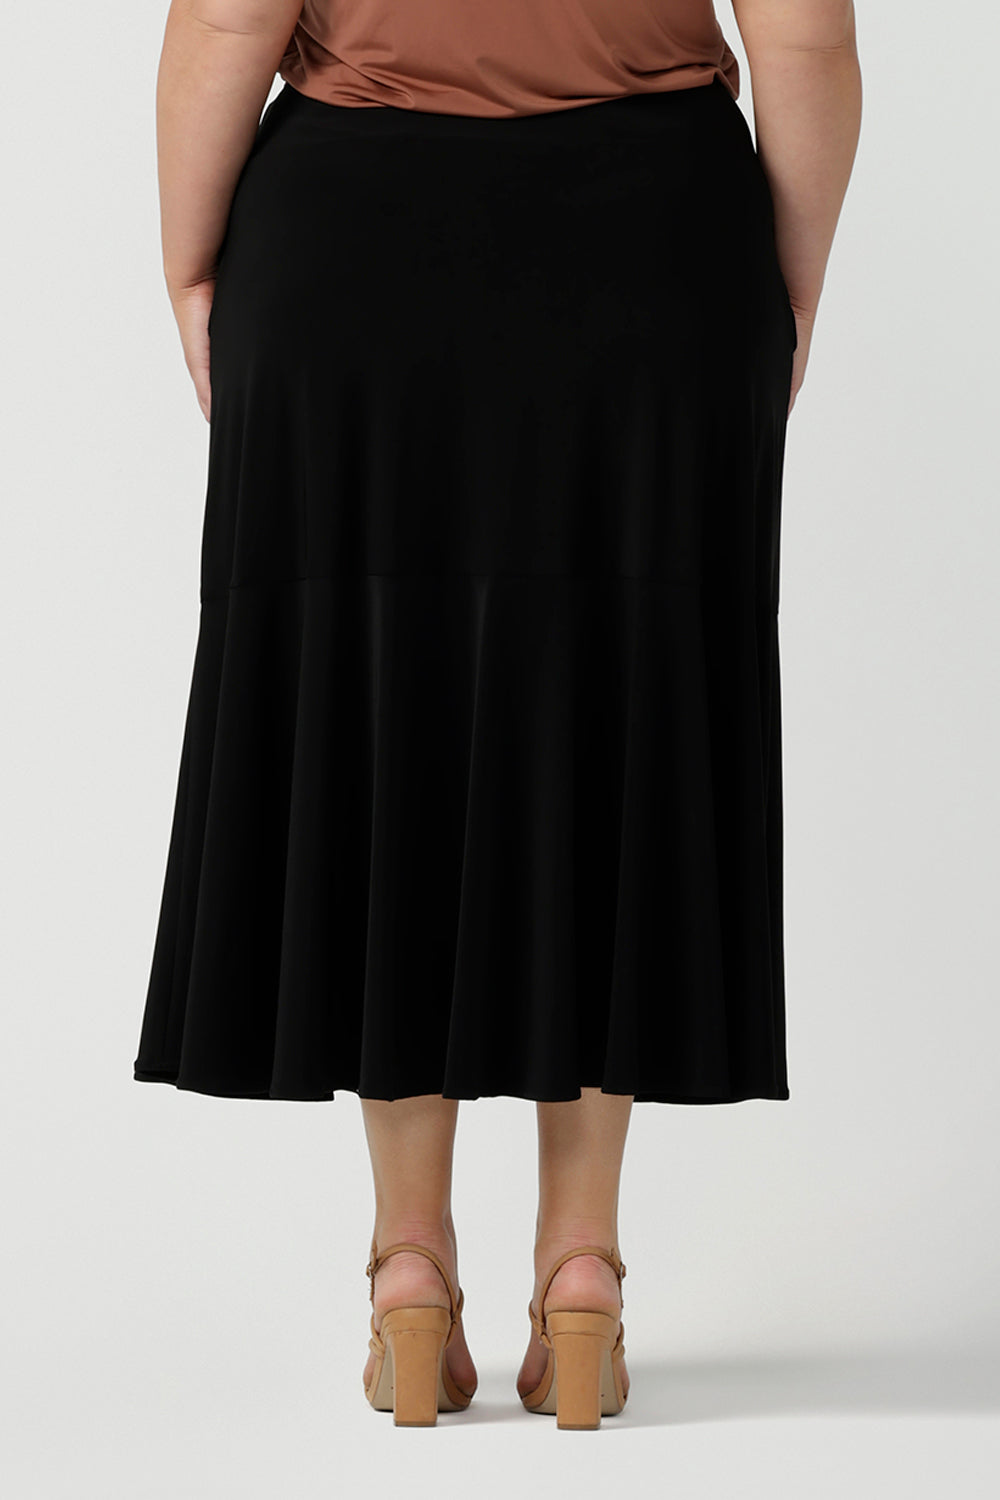 Berit Maxi Skirt in Black | Leina & Fleur | Women's Work Skirts